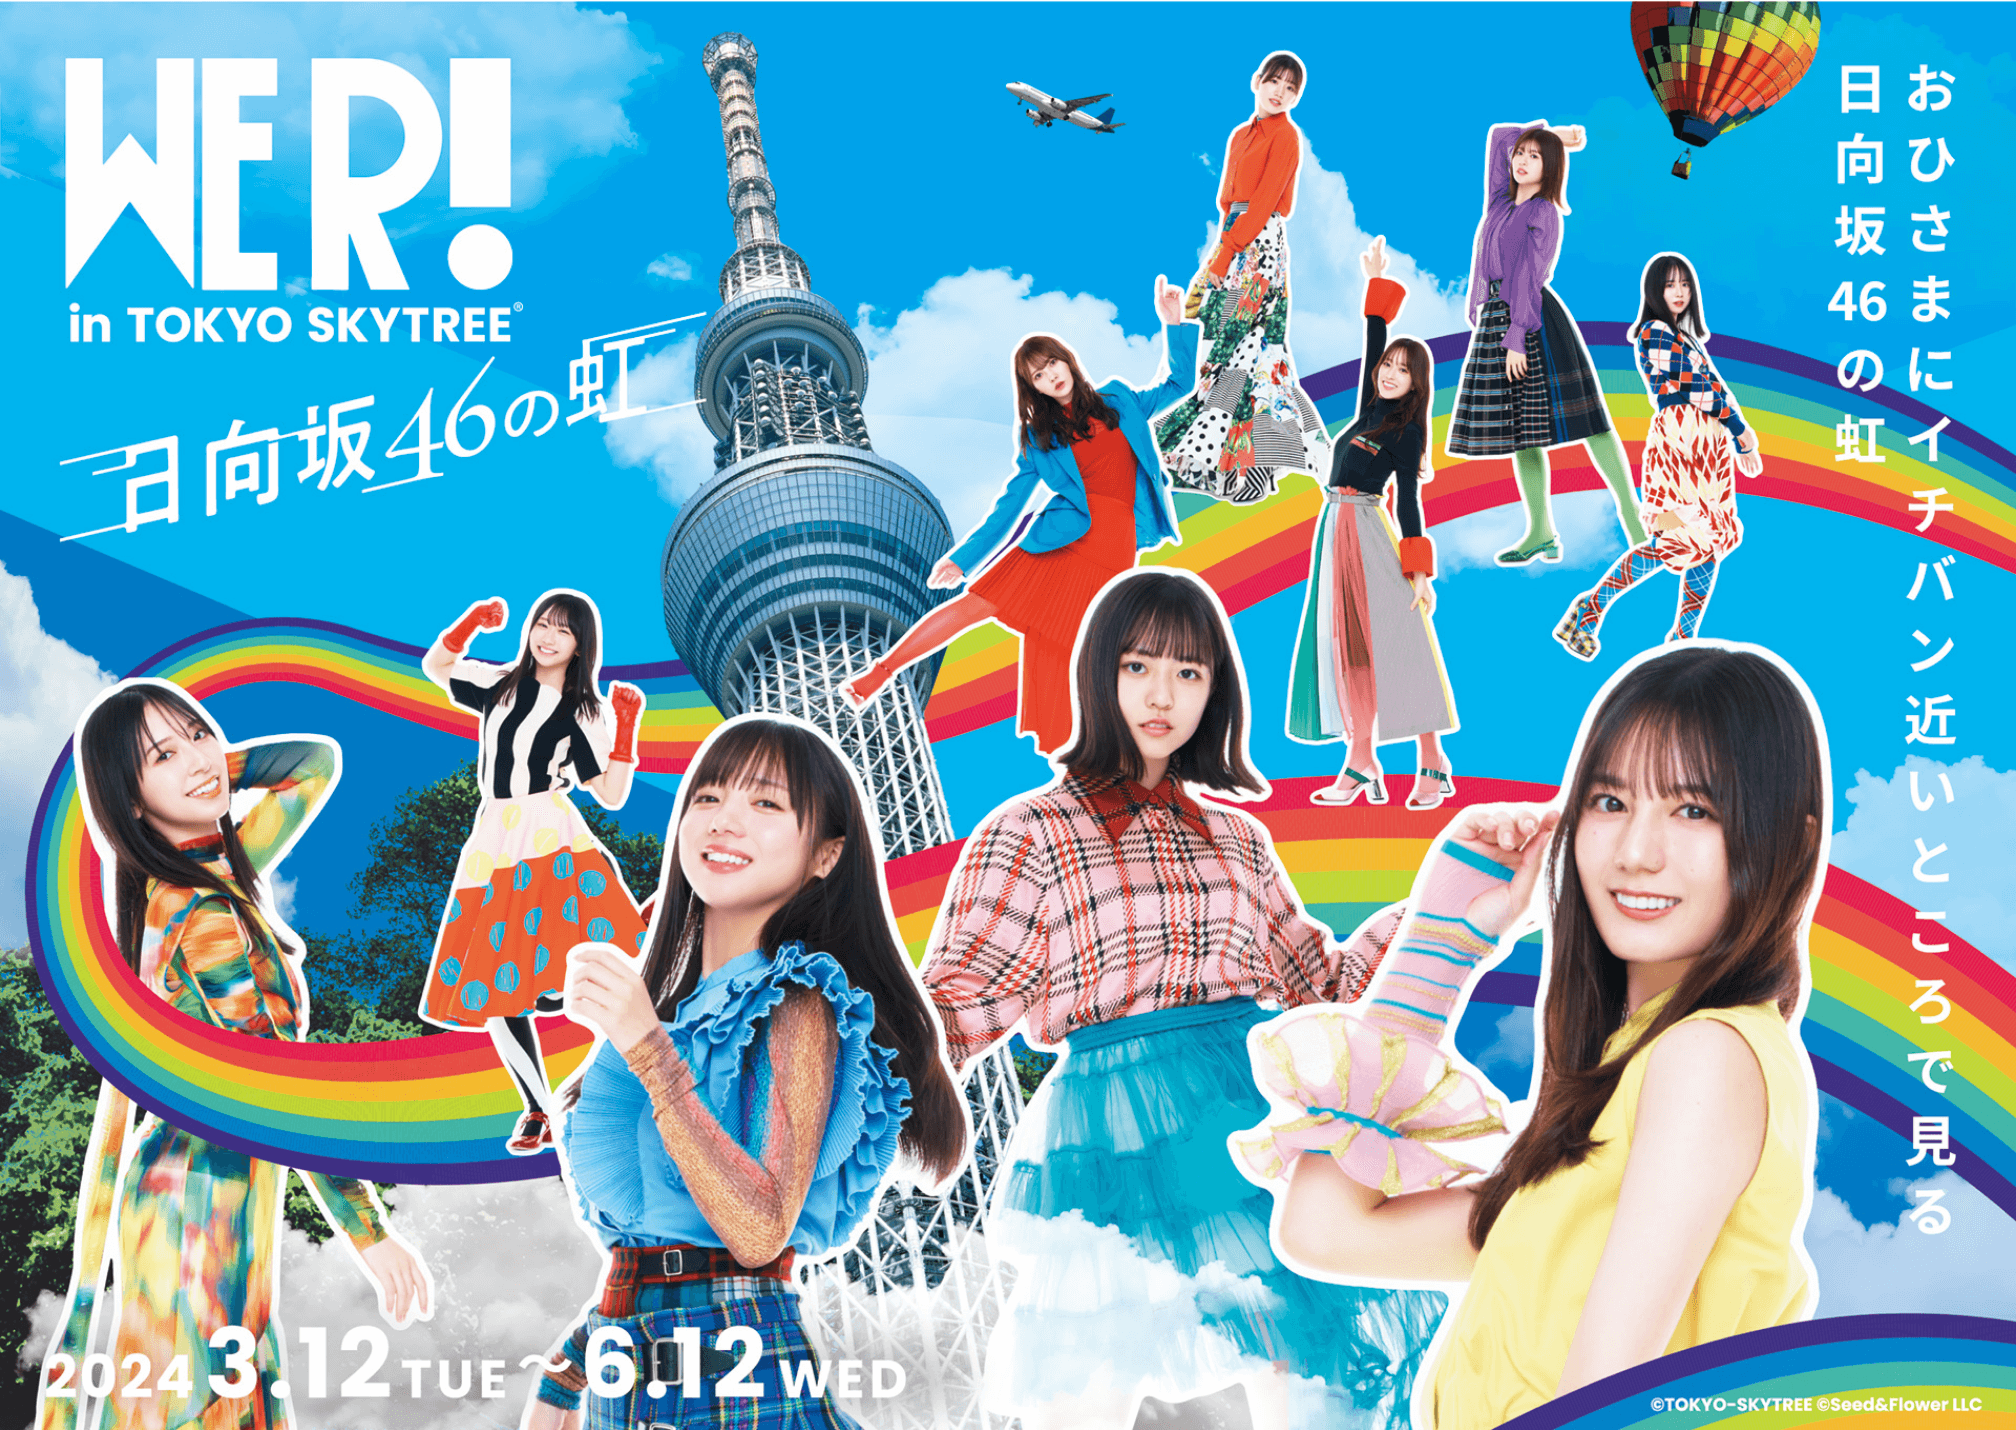 日向坂46 WE R! in TOKYO SKYTREE® -日向坂46の虹- with JR東海